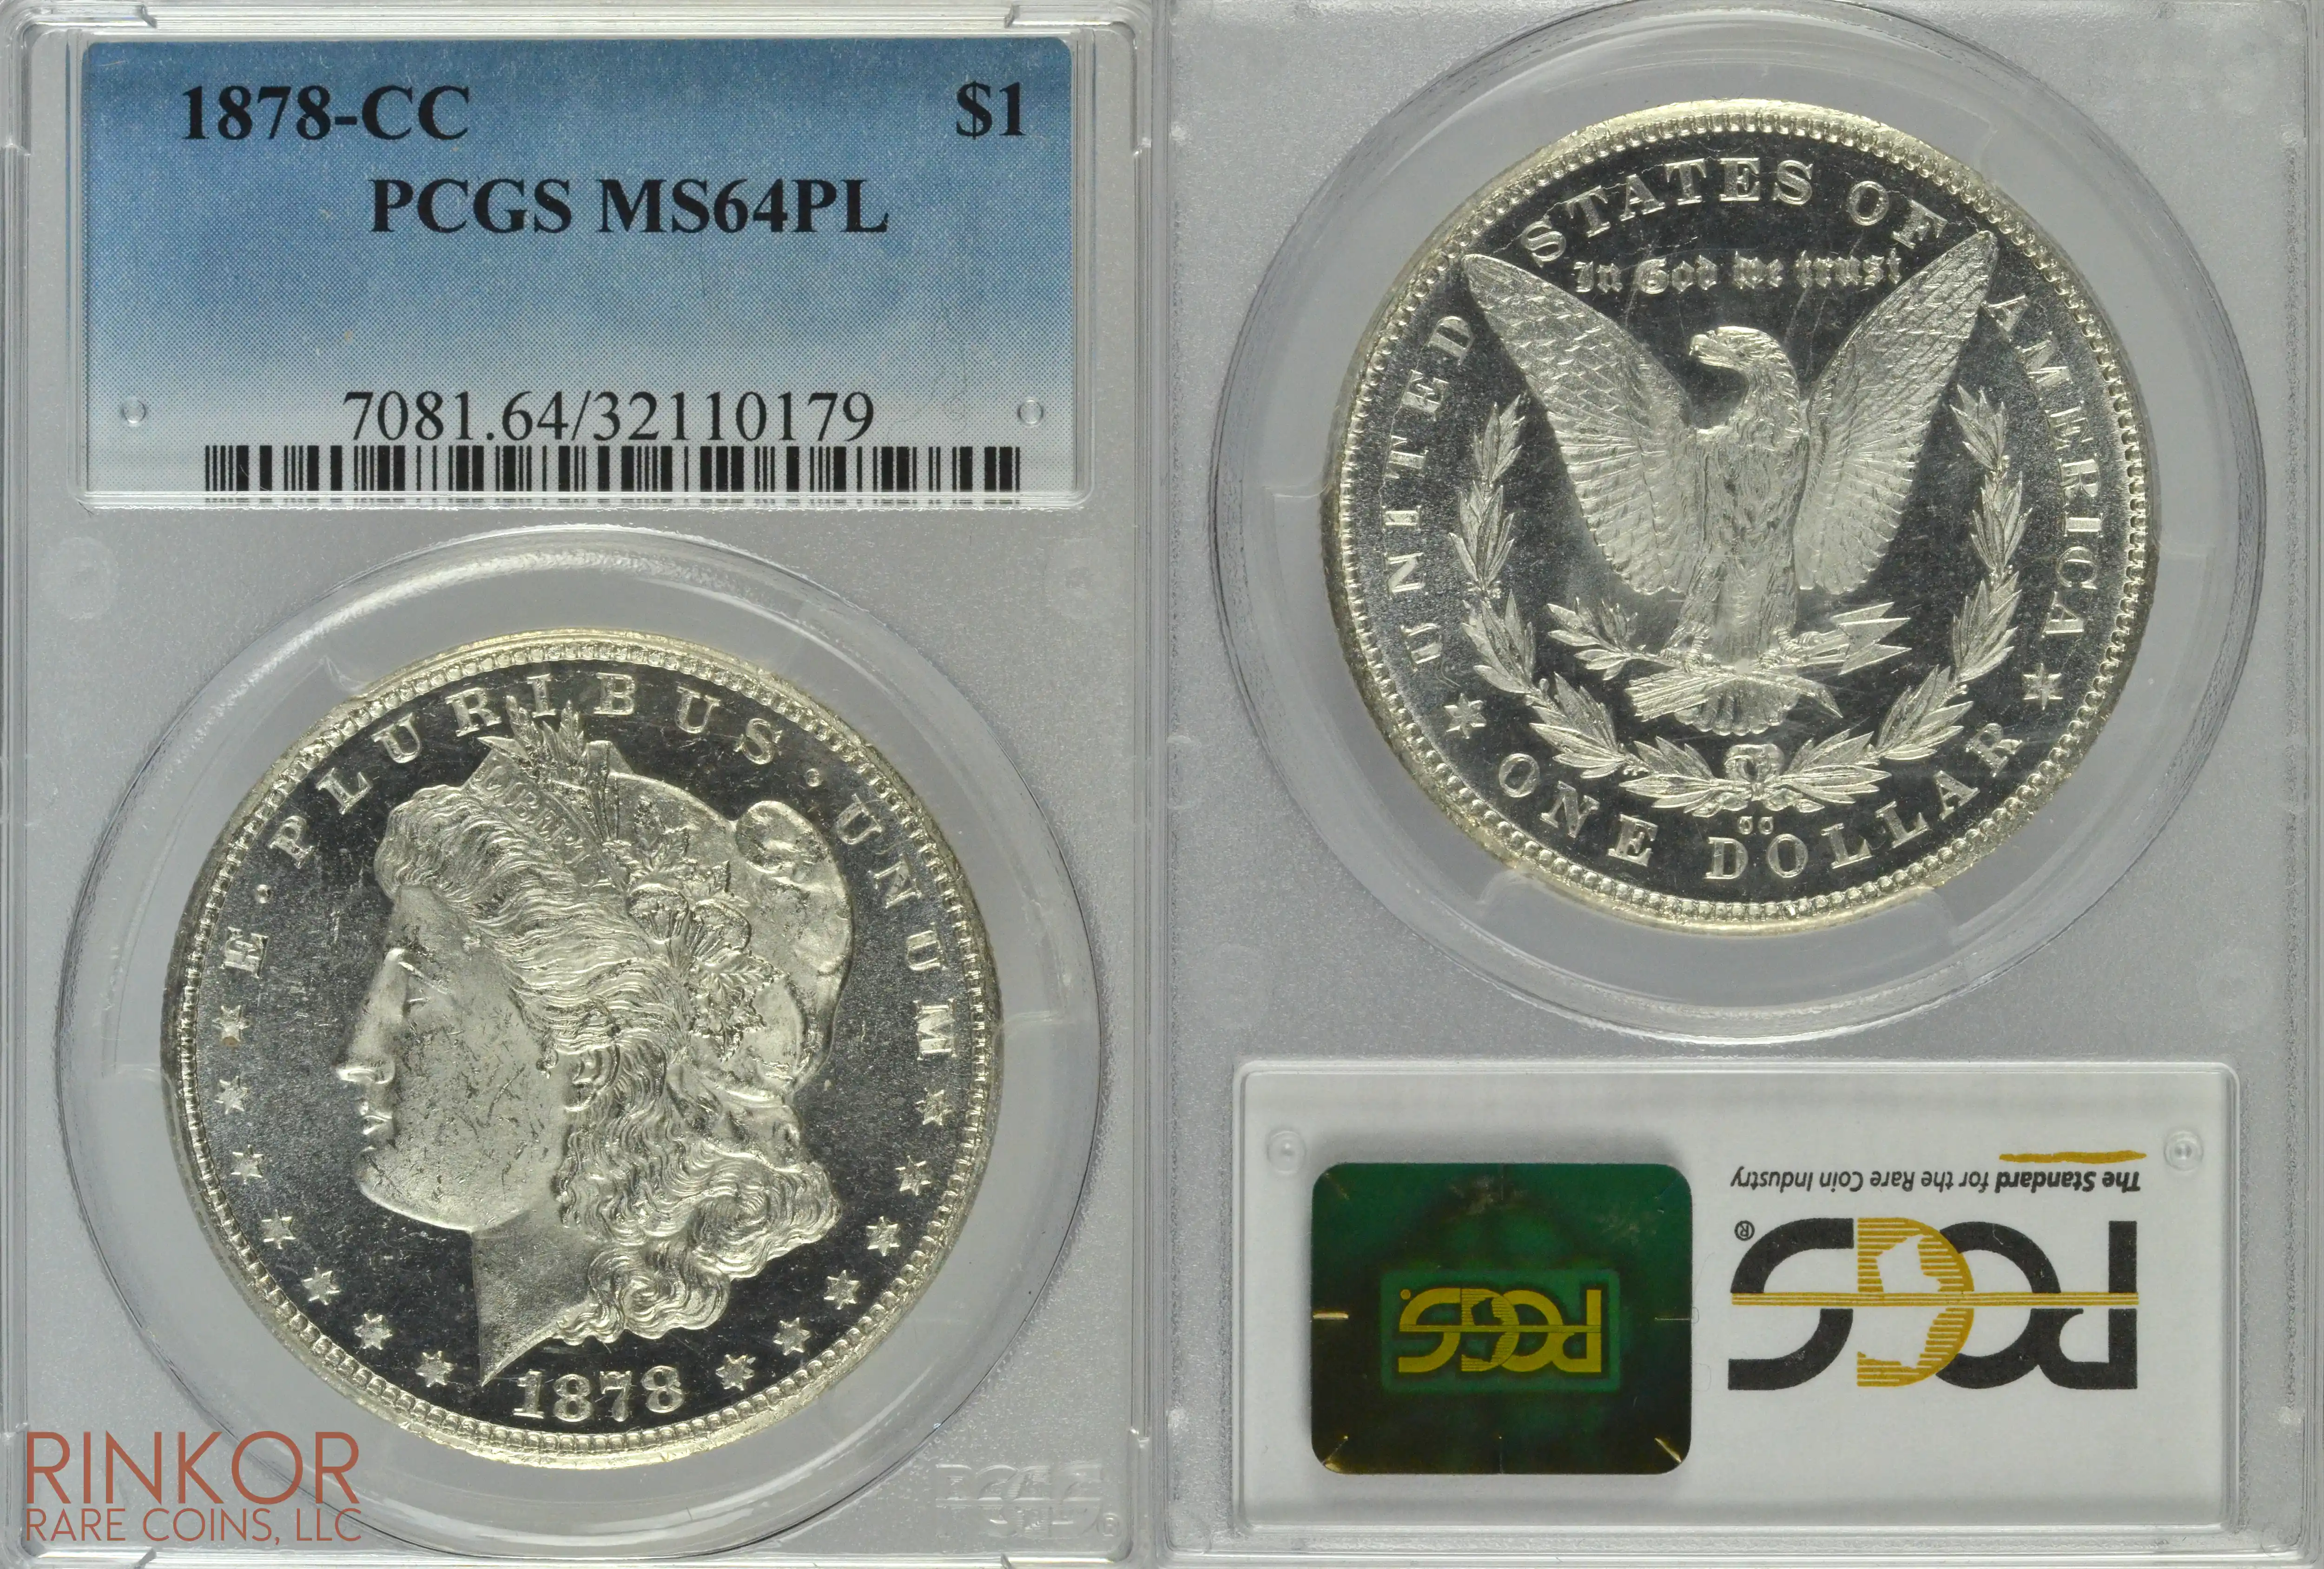 1878-CC $1 PCGS MS 64 PL